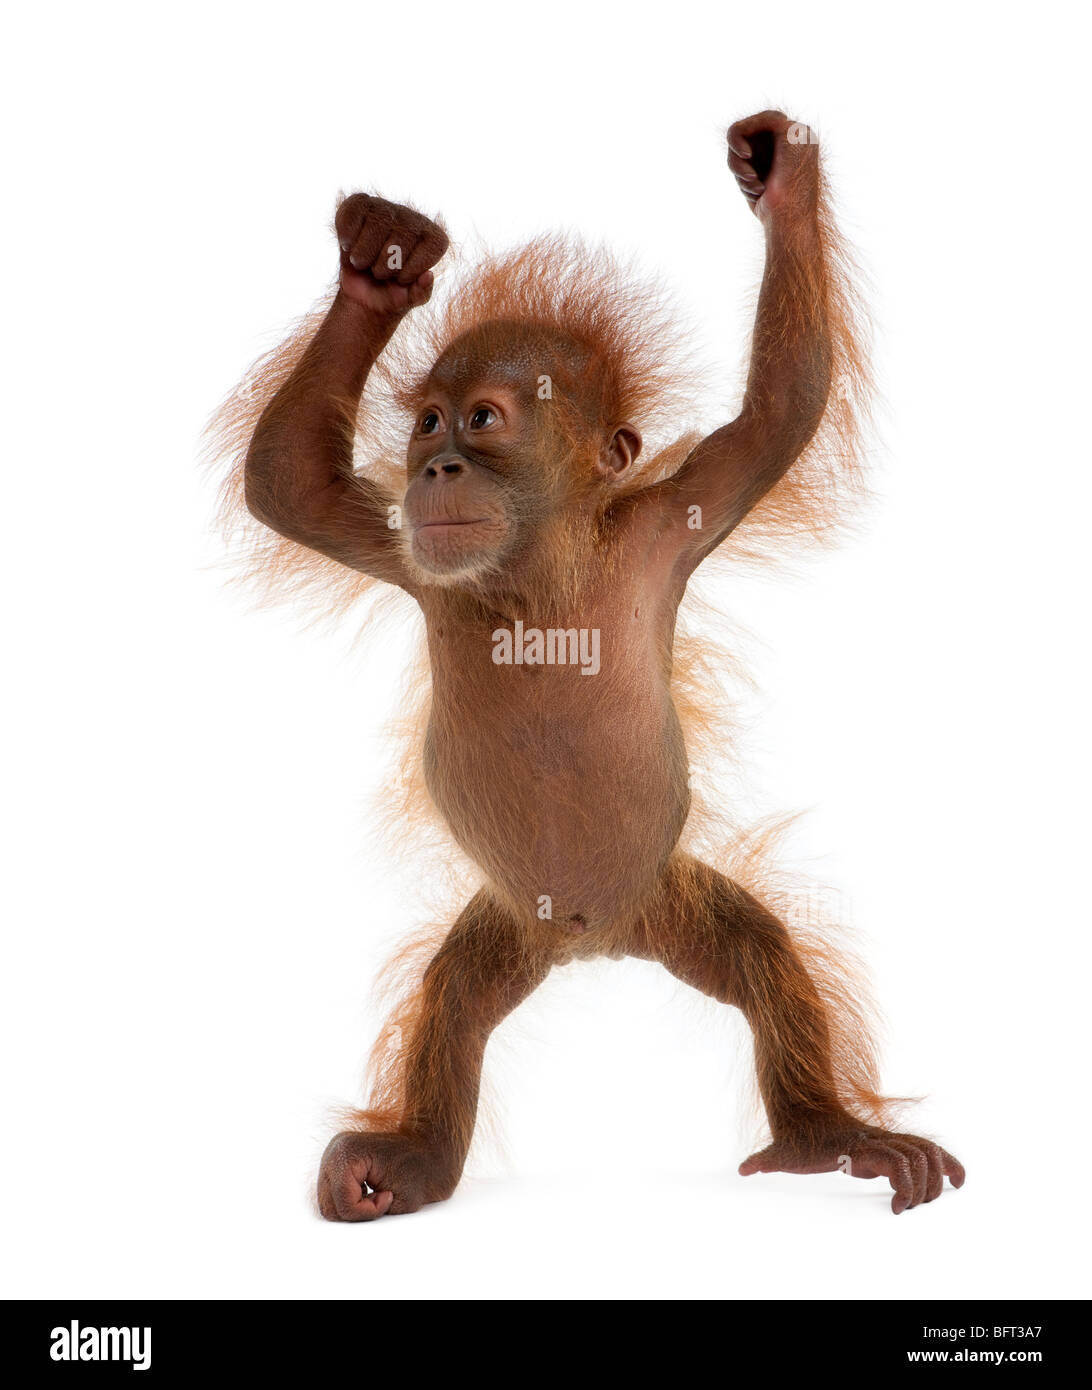 Bebé orangután de Sumatra, de 4 meses de edad, de pie delante de un fondo blanco Foto de stock